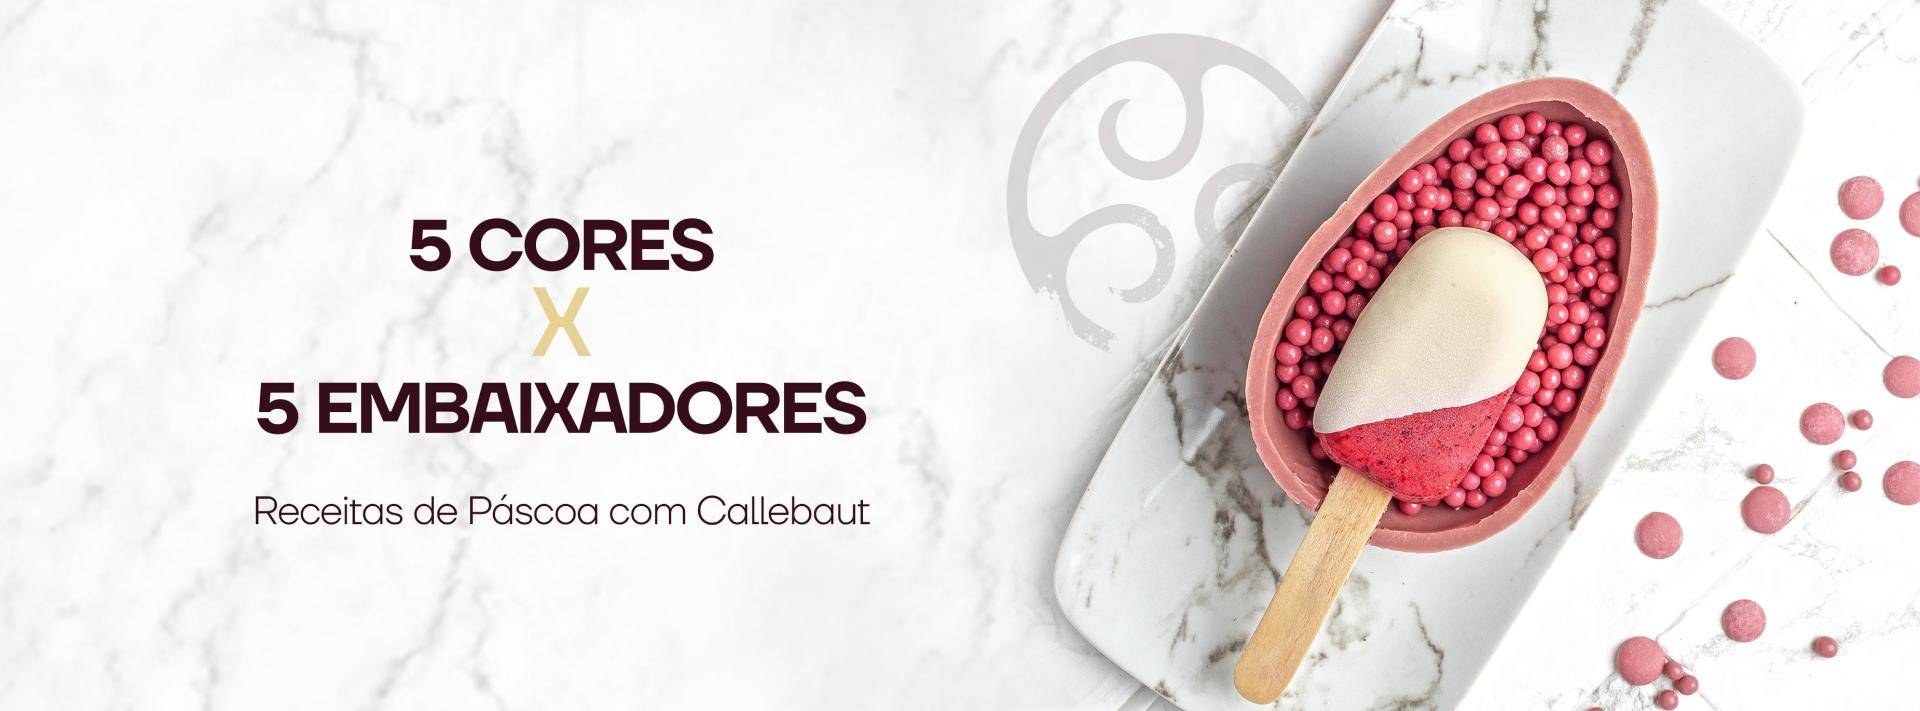 5 cores x 5 embaixadores - receitas de páscoa com Callebaut